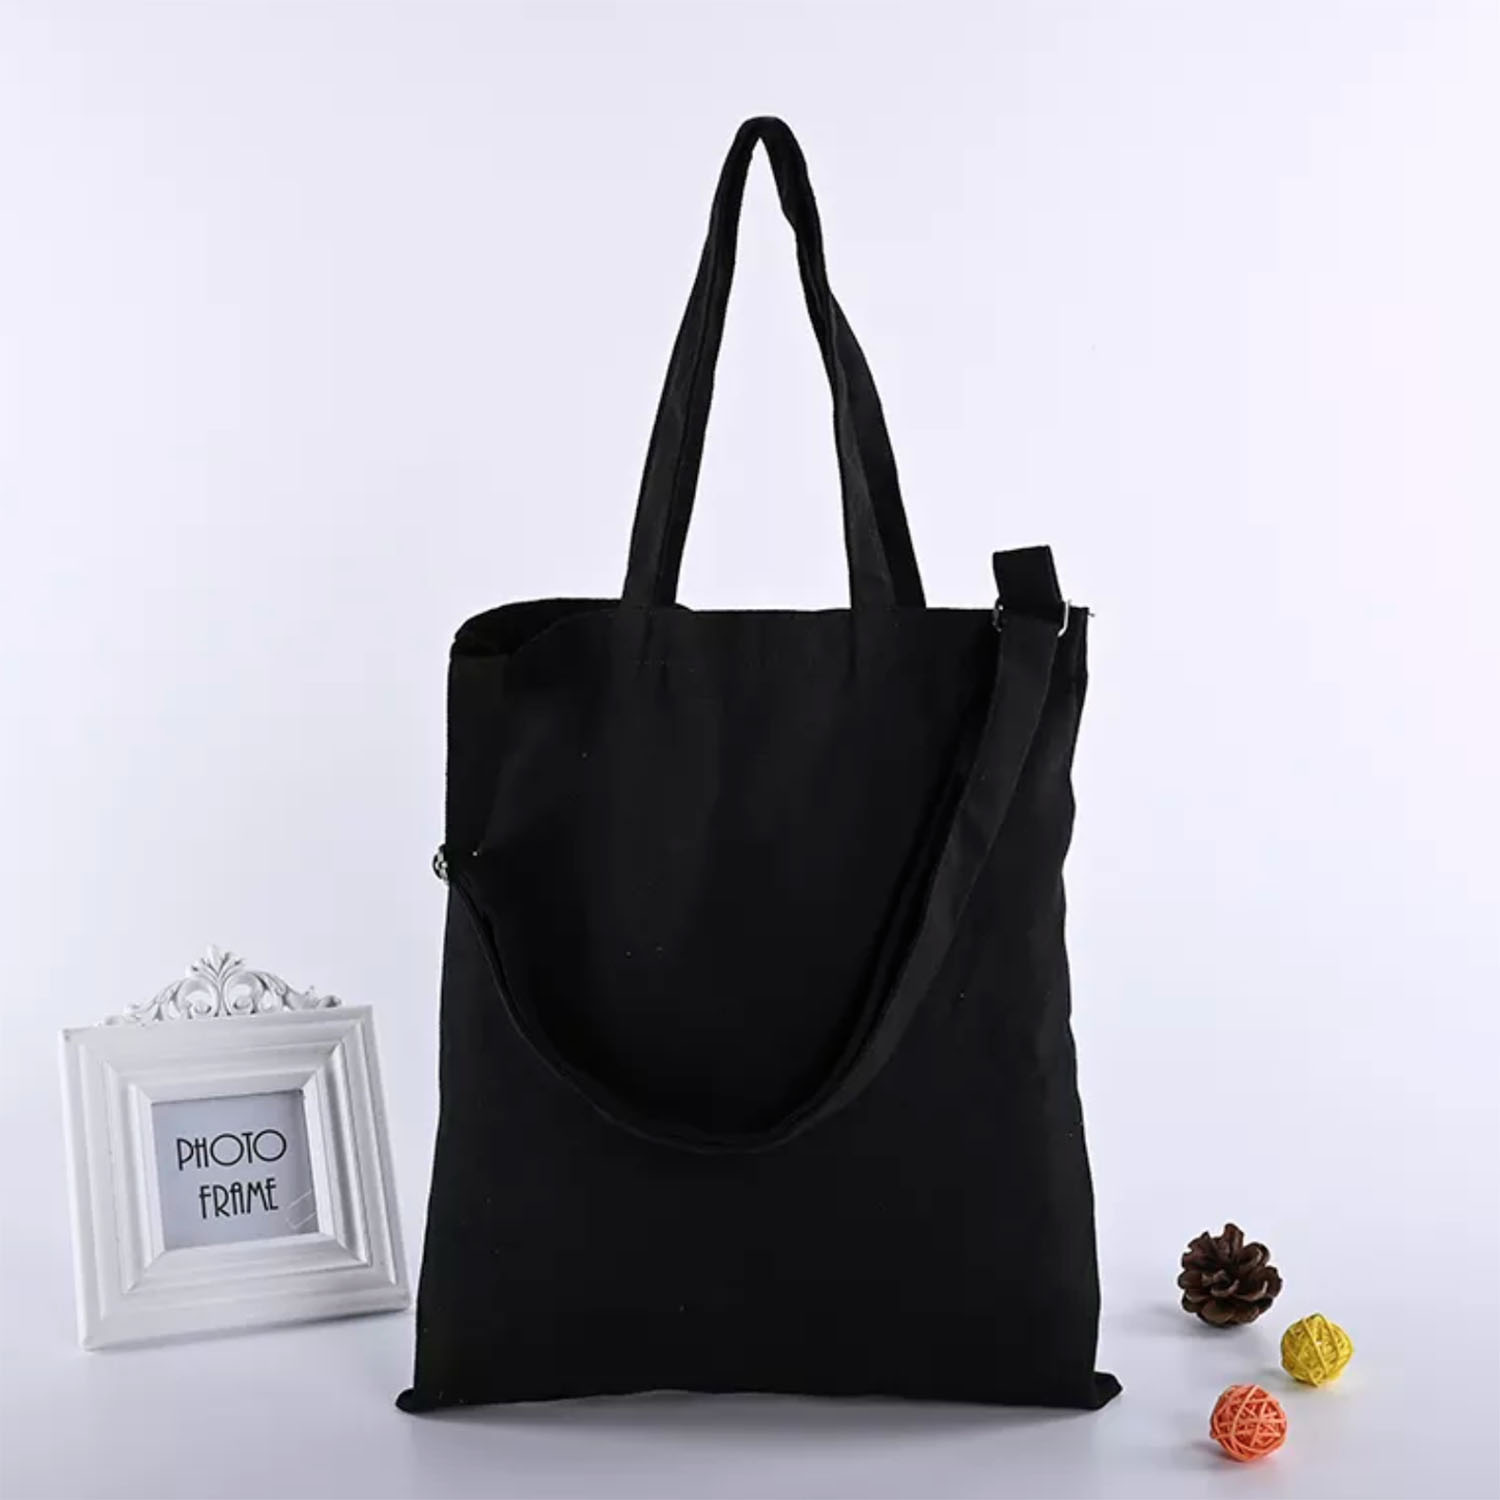 Black Handbag Strap Bag Straps for Handbags Black Shoulder Strap